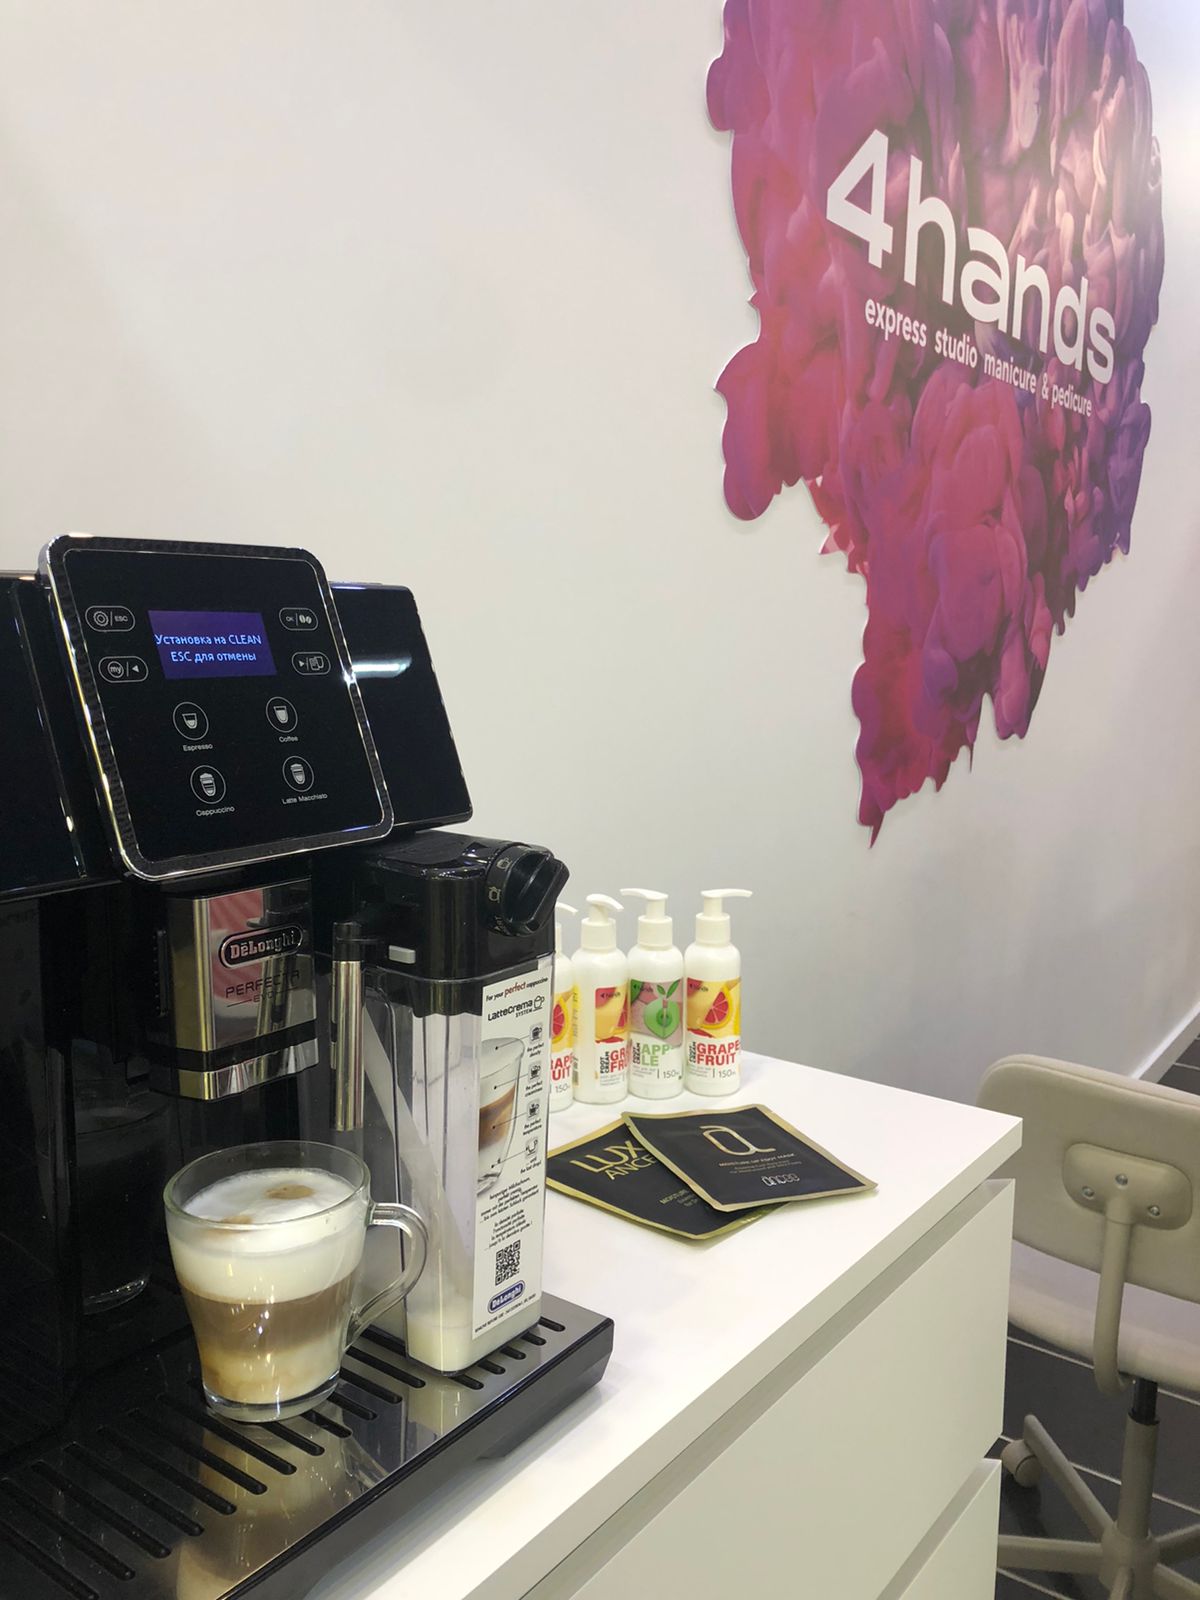 Кофе машины производителя Nespresso, купить отдельно или получить бесплатно при покупке капсул